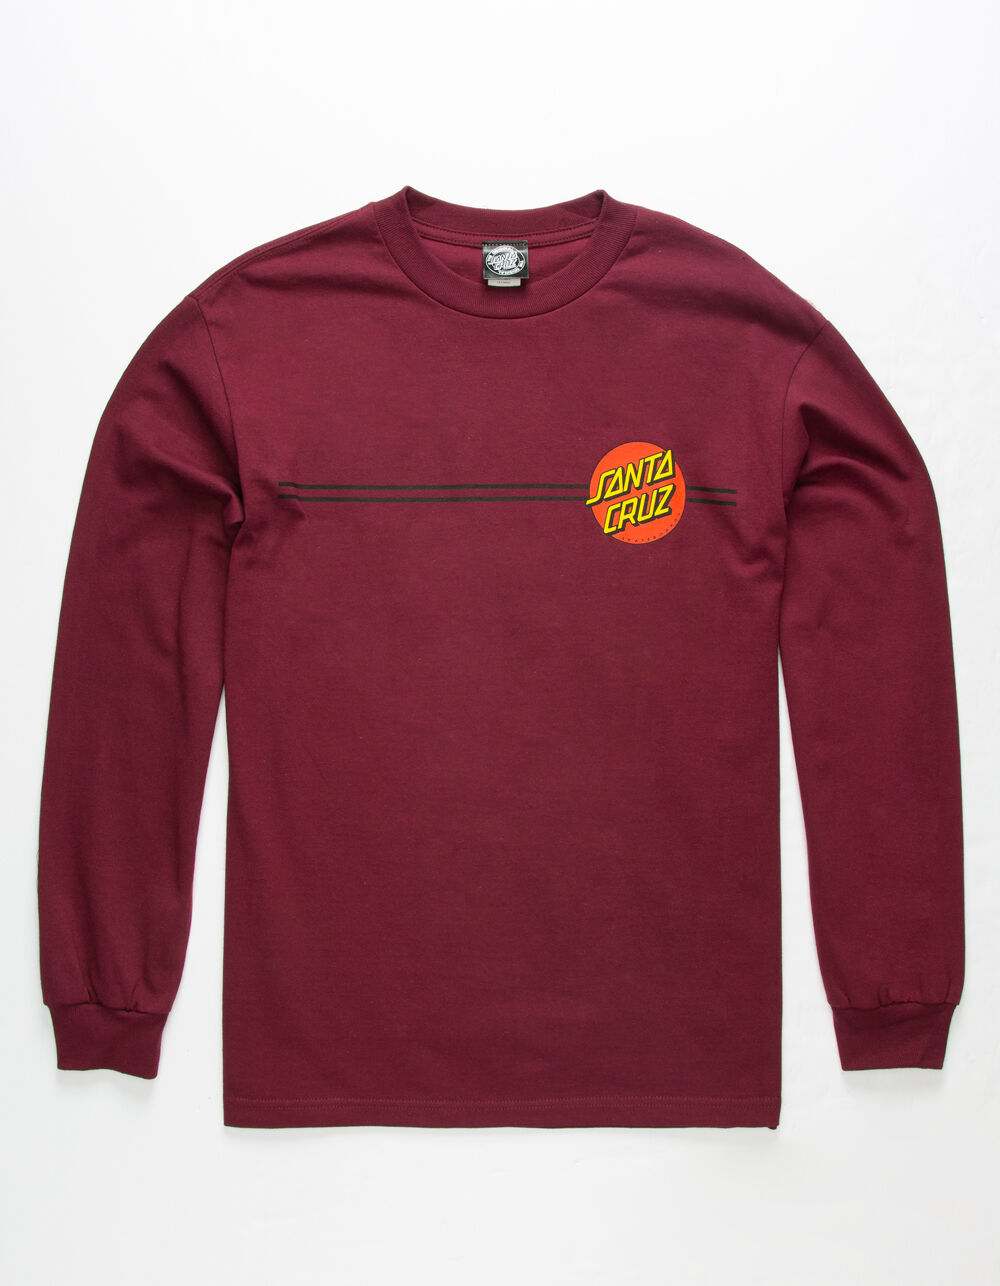 SANTA CRUZ Classic Dot Burgundy Mens T-Shirt image number 0